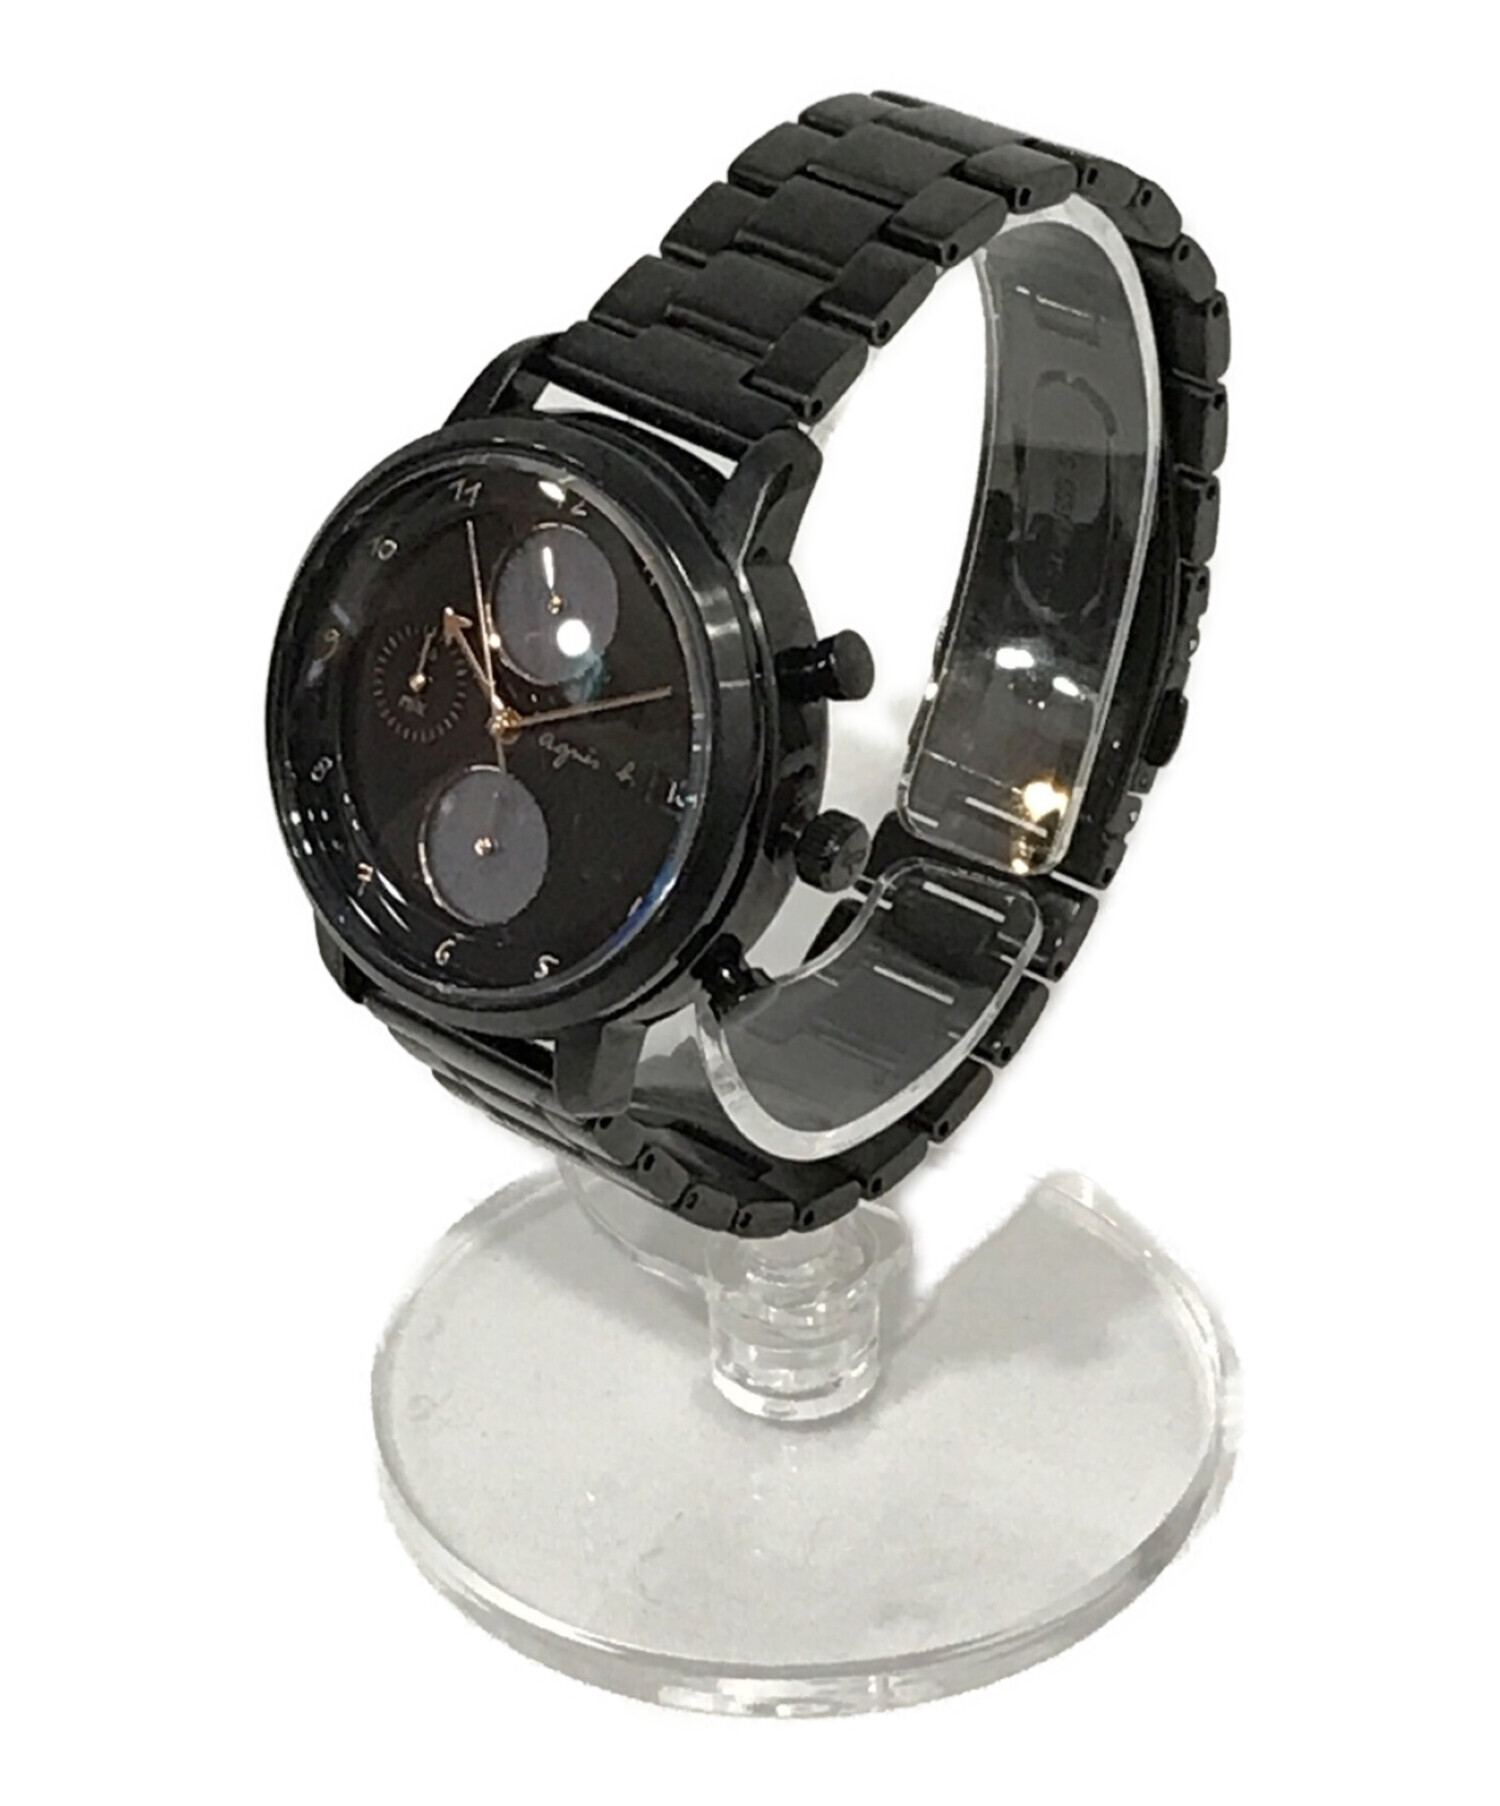 アニエスベー FCRD997 ソーラー 腕時計 メンズ レディース ブラック